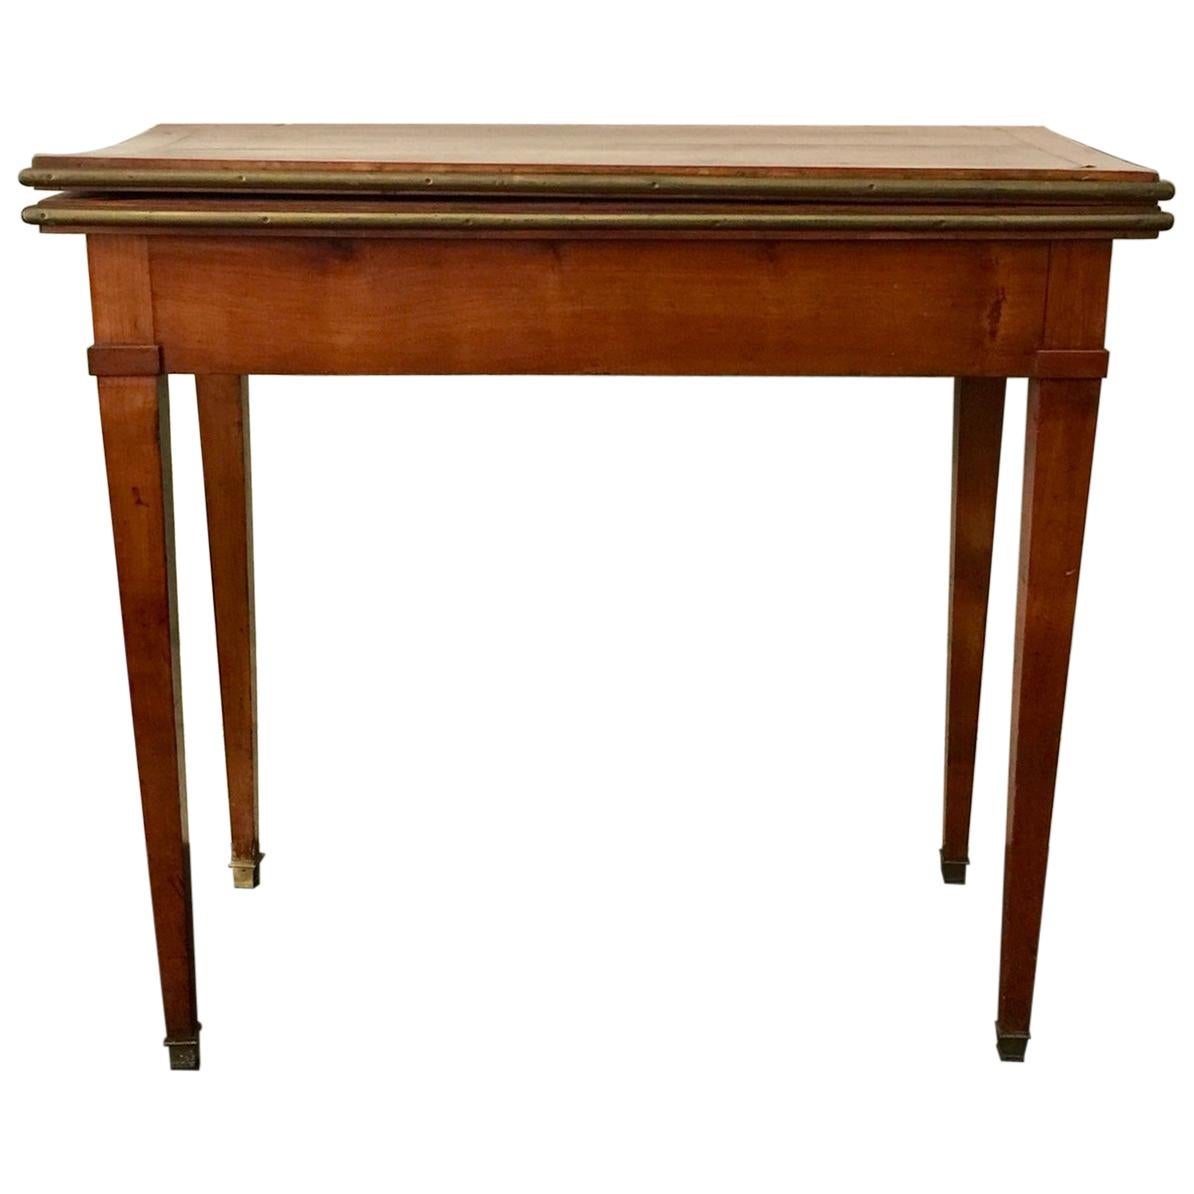 Table console/table de jeu de style Louis XVI français